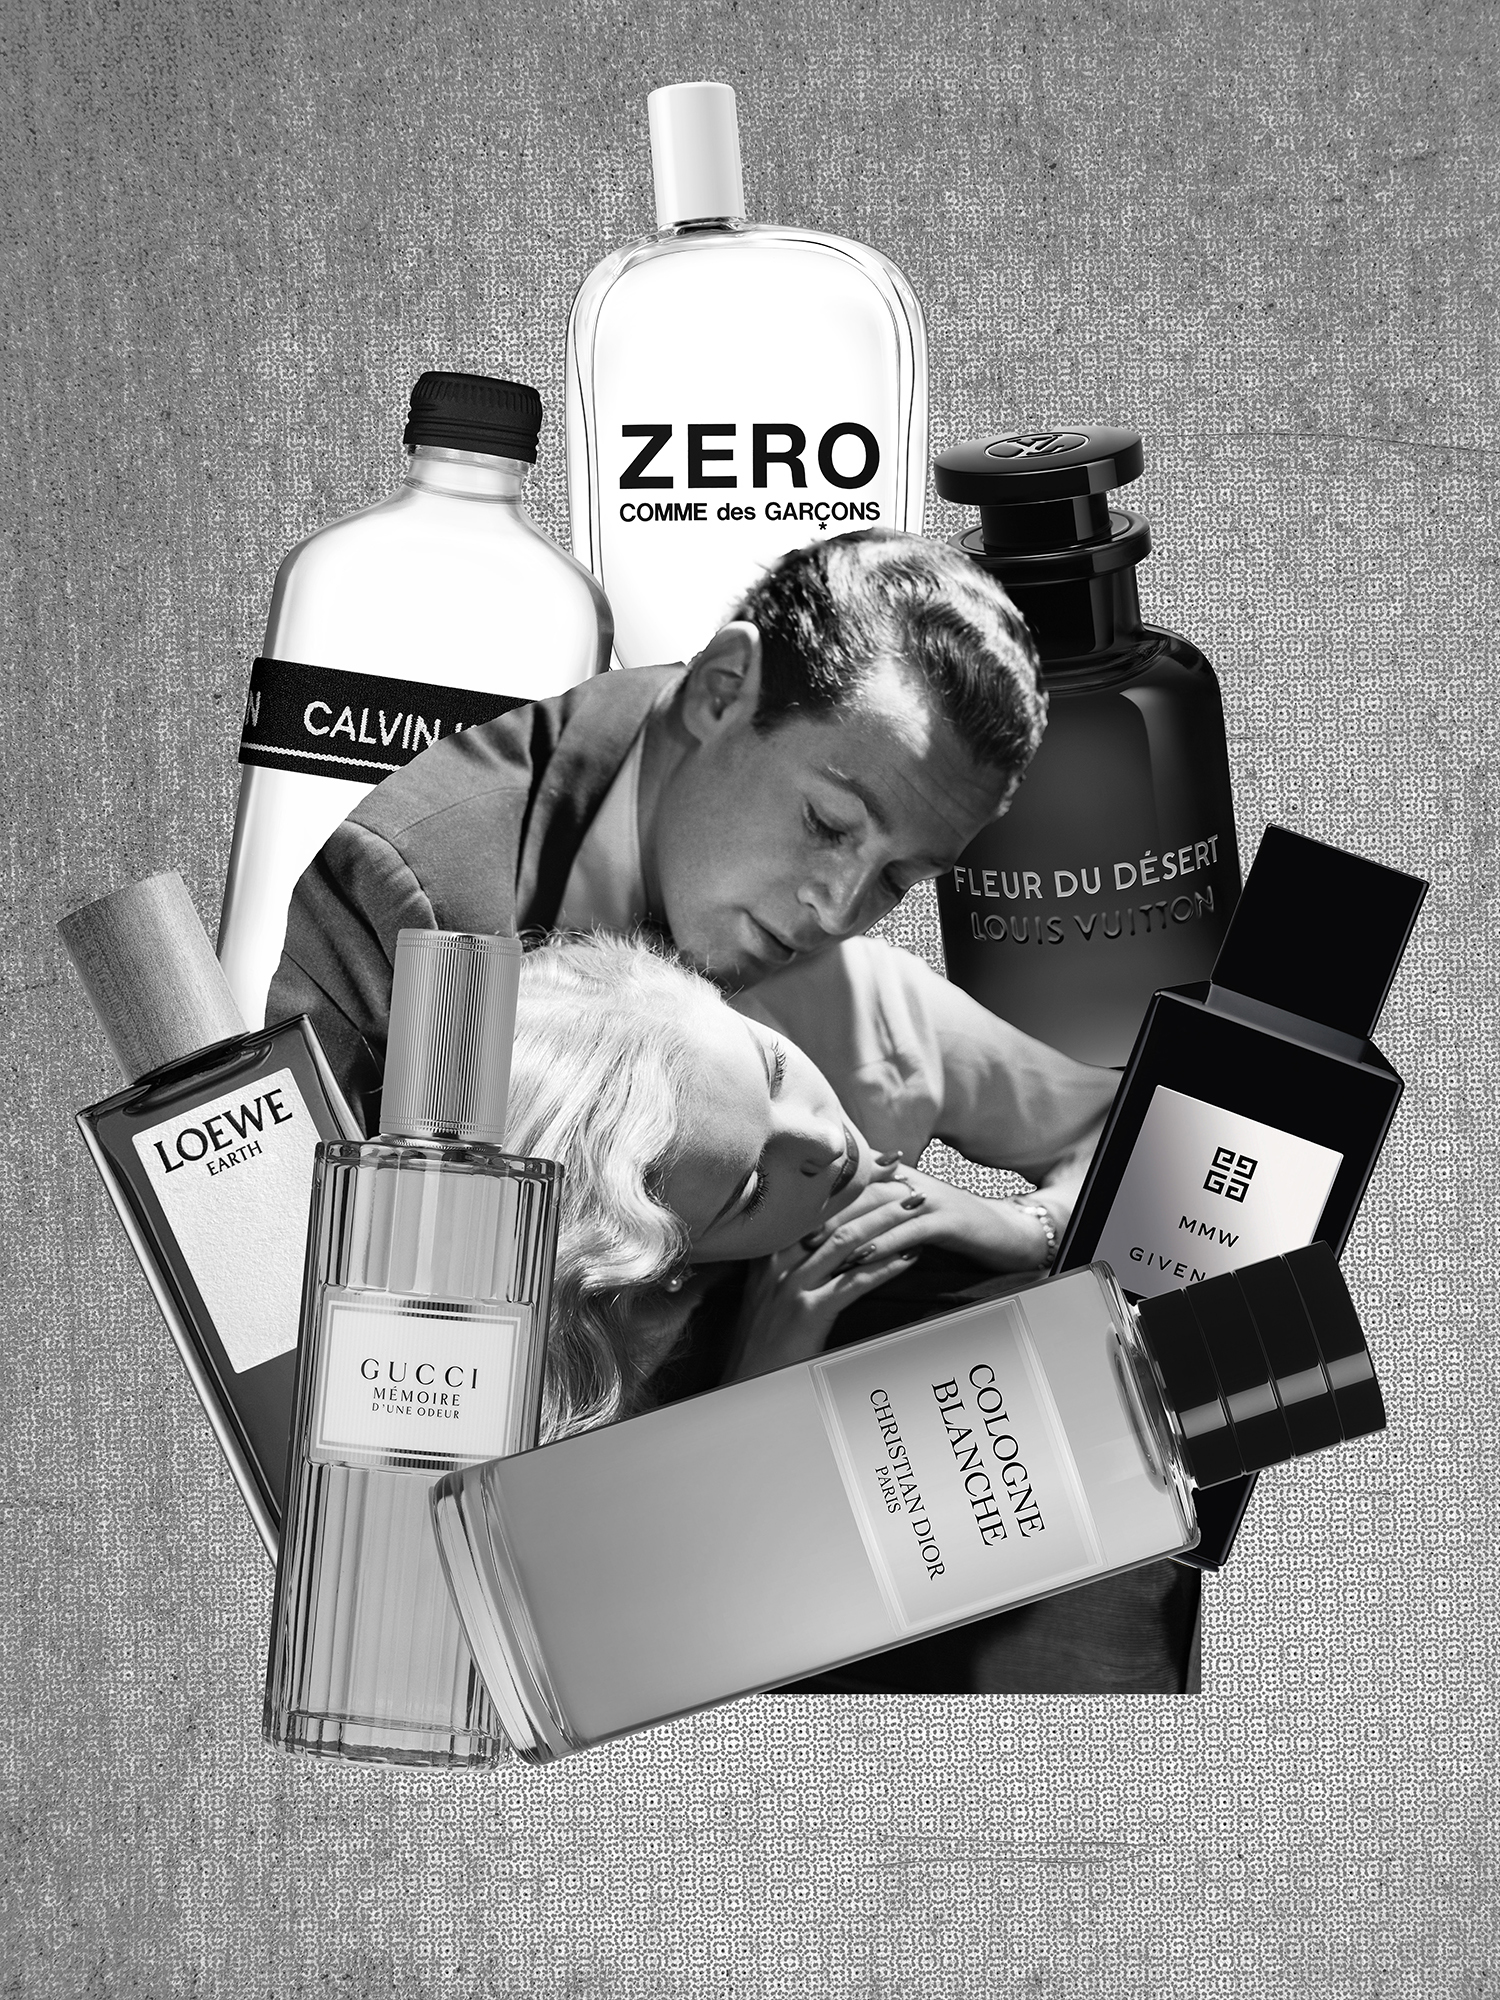 ALT: Perfumes para mujeres, para hombres o viceversa, ¿tienen género los aromas?